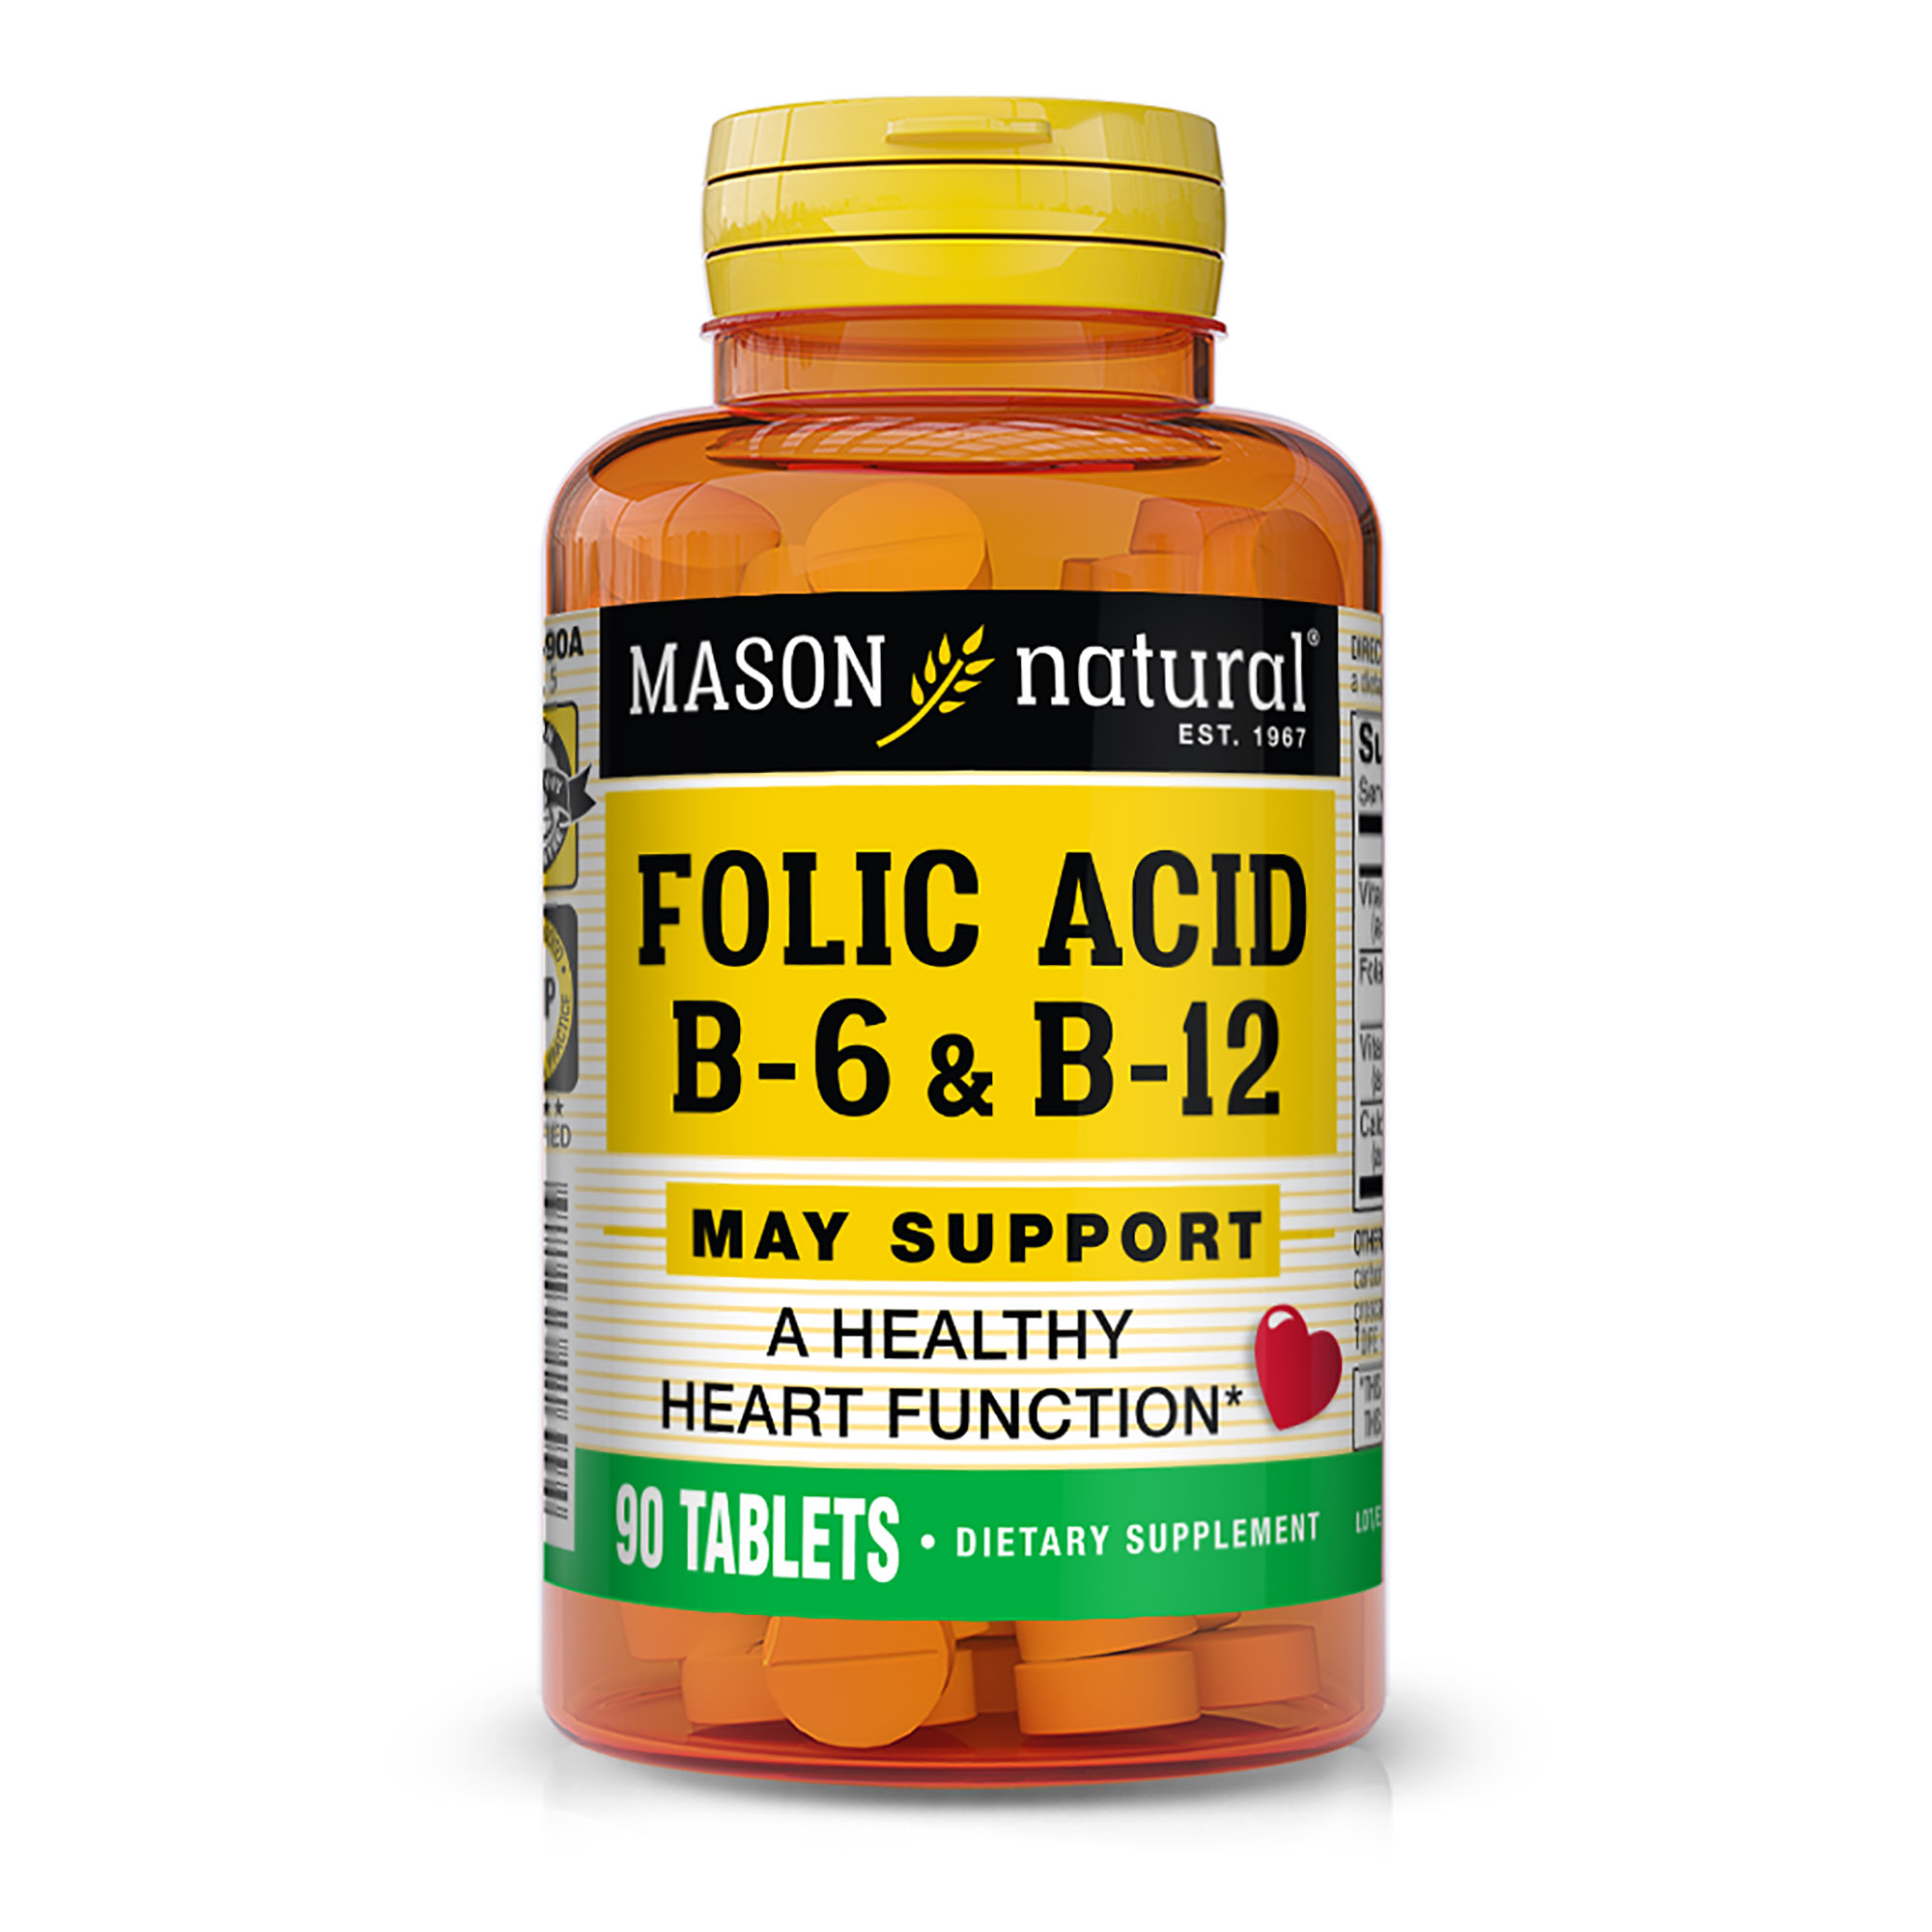 Mason Natural Heart Formula Folic Acid with Vitamin B6 and B12, 90 Tablets - image 1 of 5